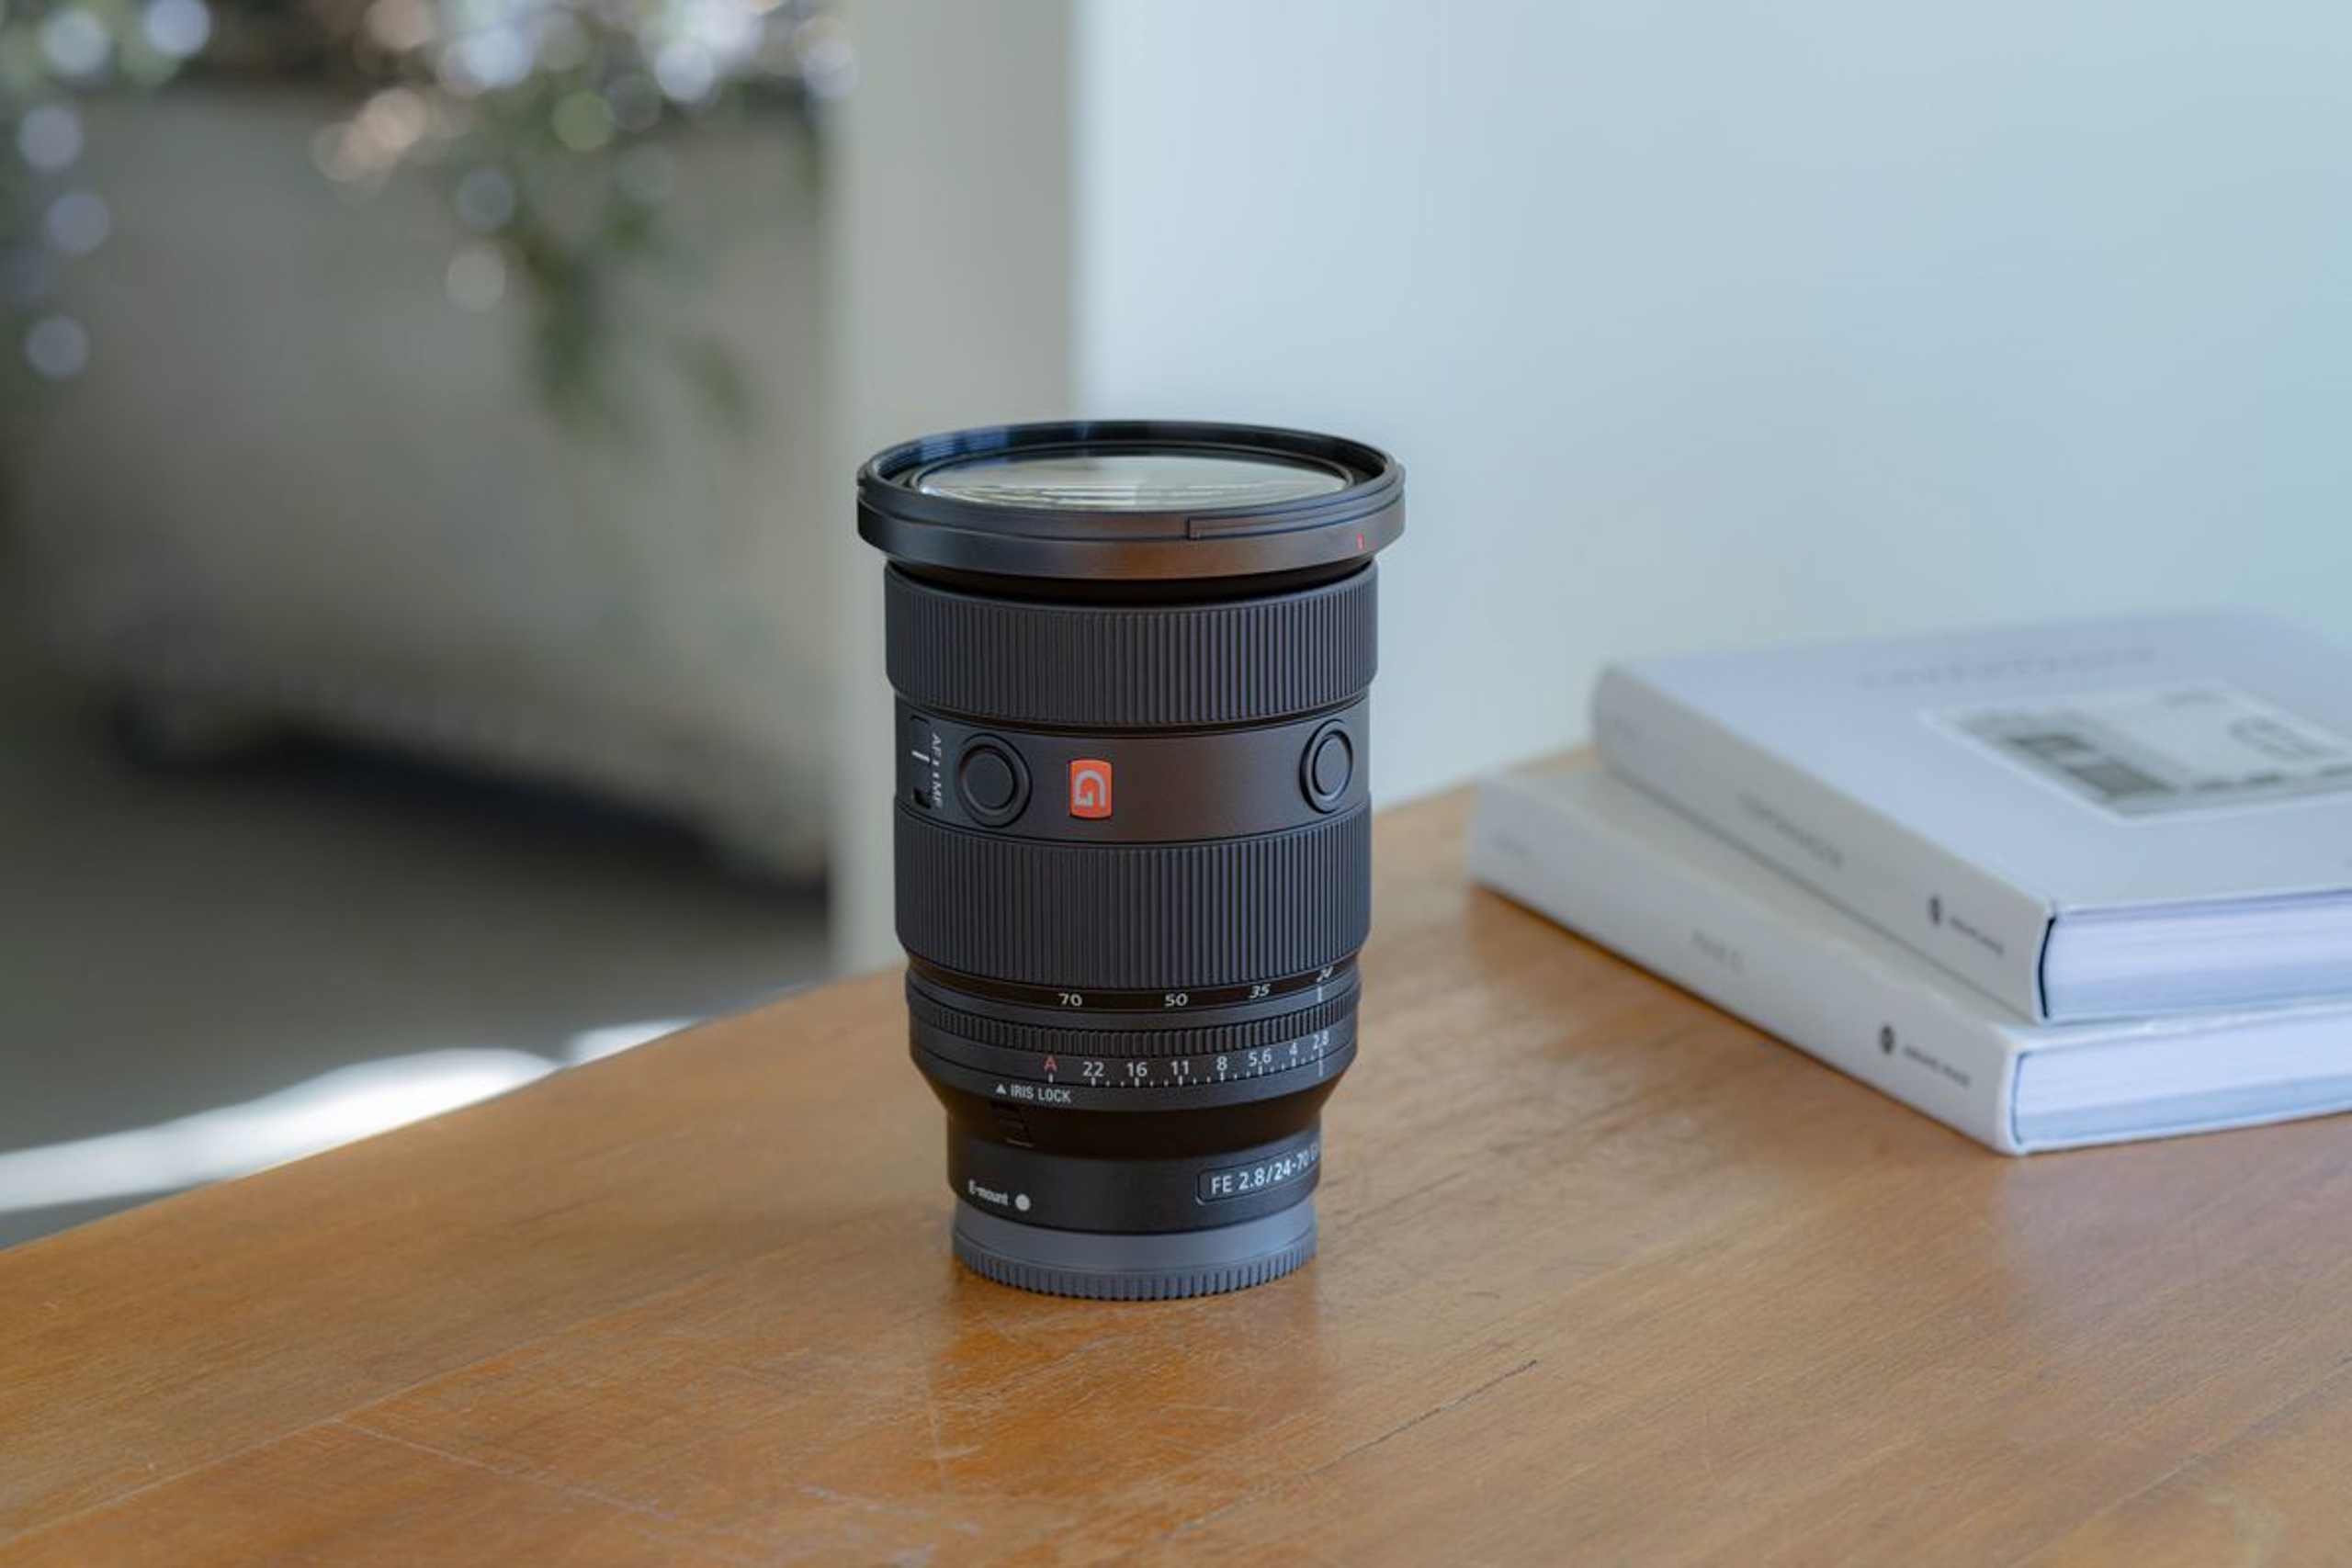 Sony ra mắt FE 24-70mm F2.8 GM II - Ống kính Zoom tiêu chuẩn khẩu độ F2.8 nhỏ và nhẹ nhất thế giới